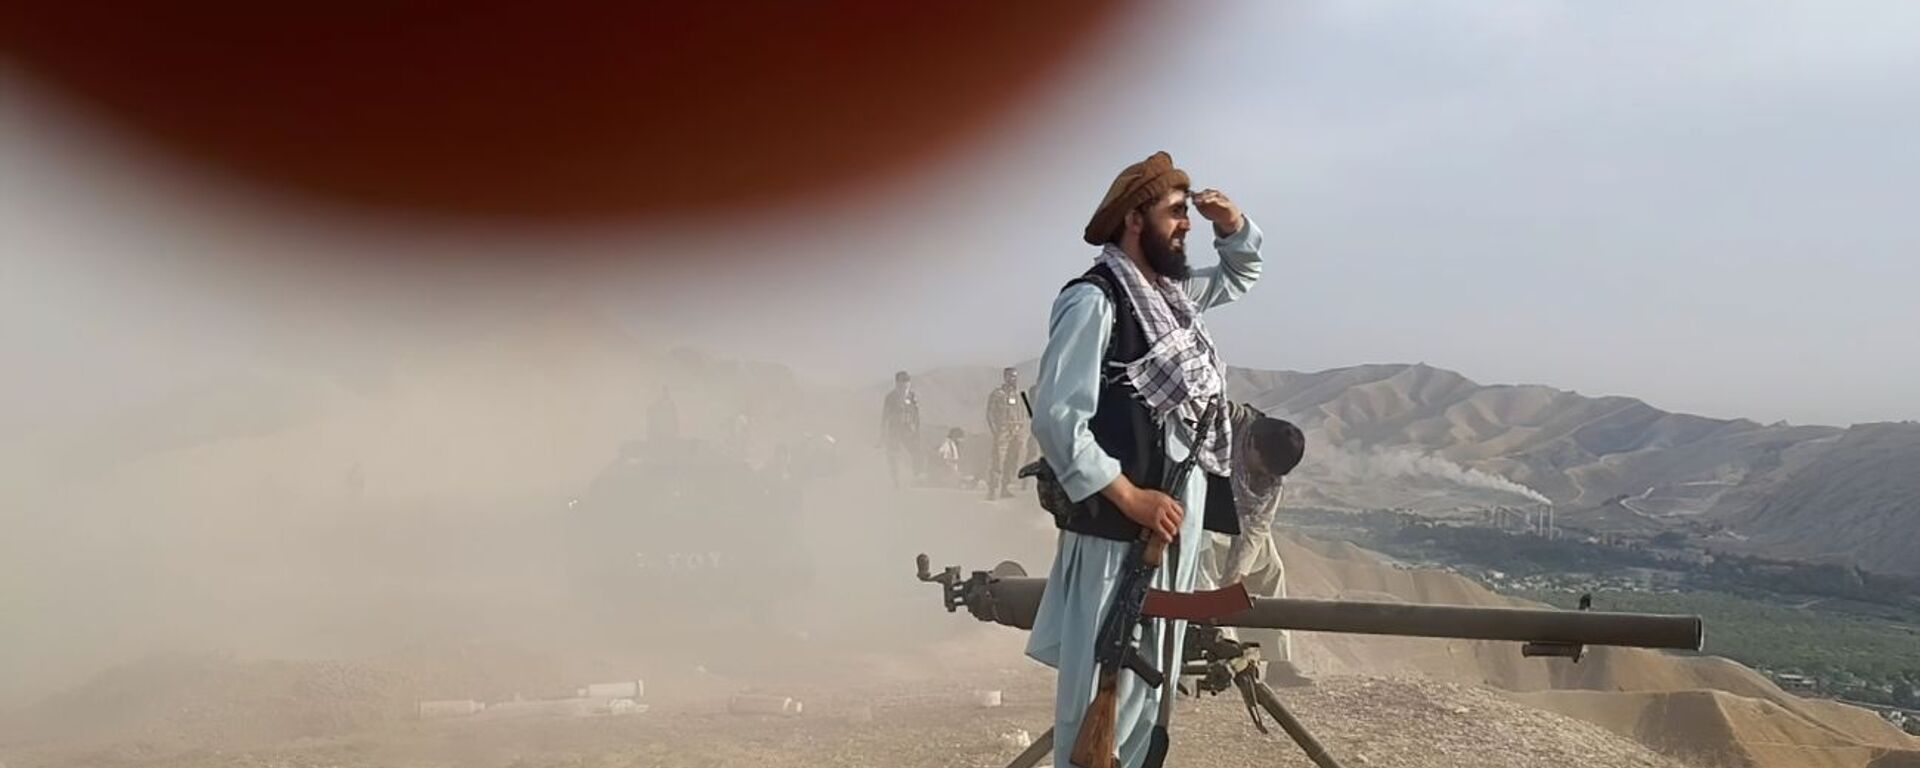 Sili soprotivleniya protiv talibov* v Andarabe, Afganistan - Sputnik O‘zbekiston, 1920, 27.10.2021